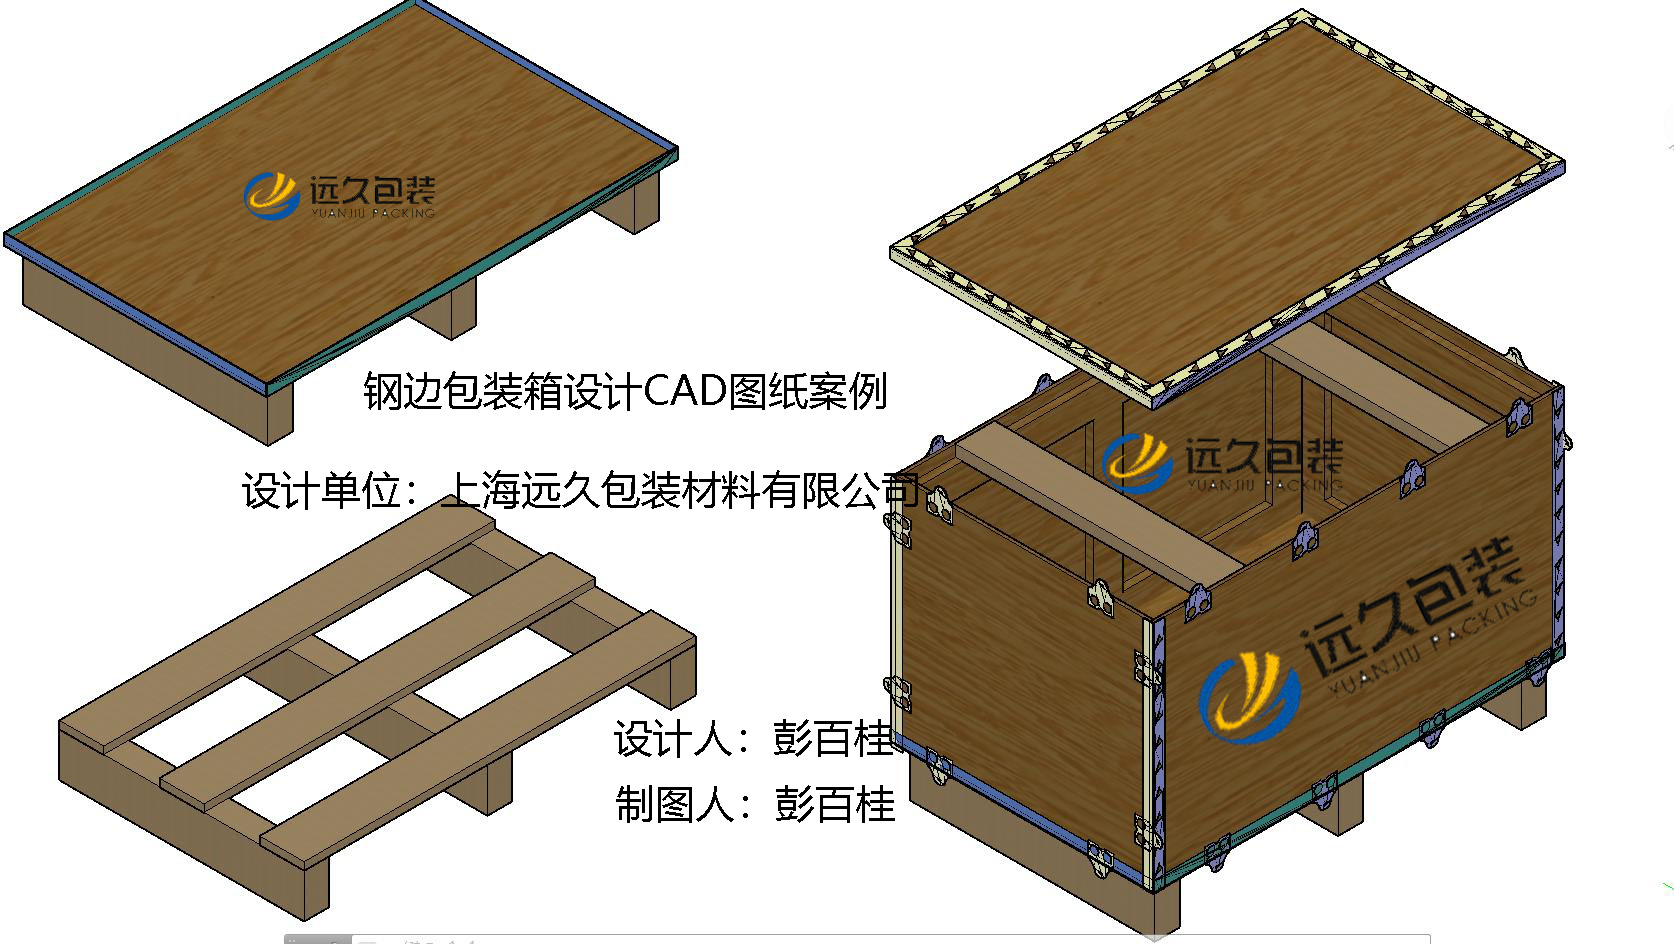 木制包装箱制作工艺、使用功能以及外观设计